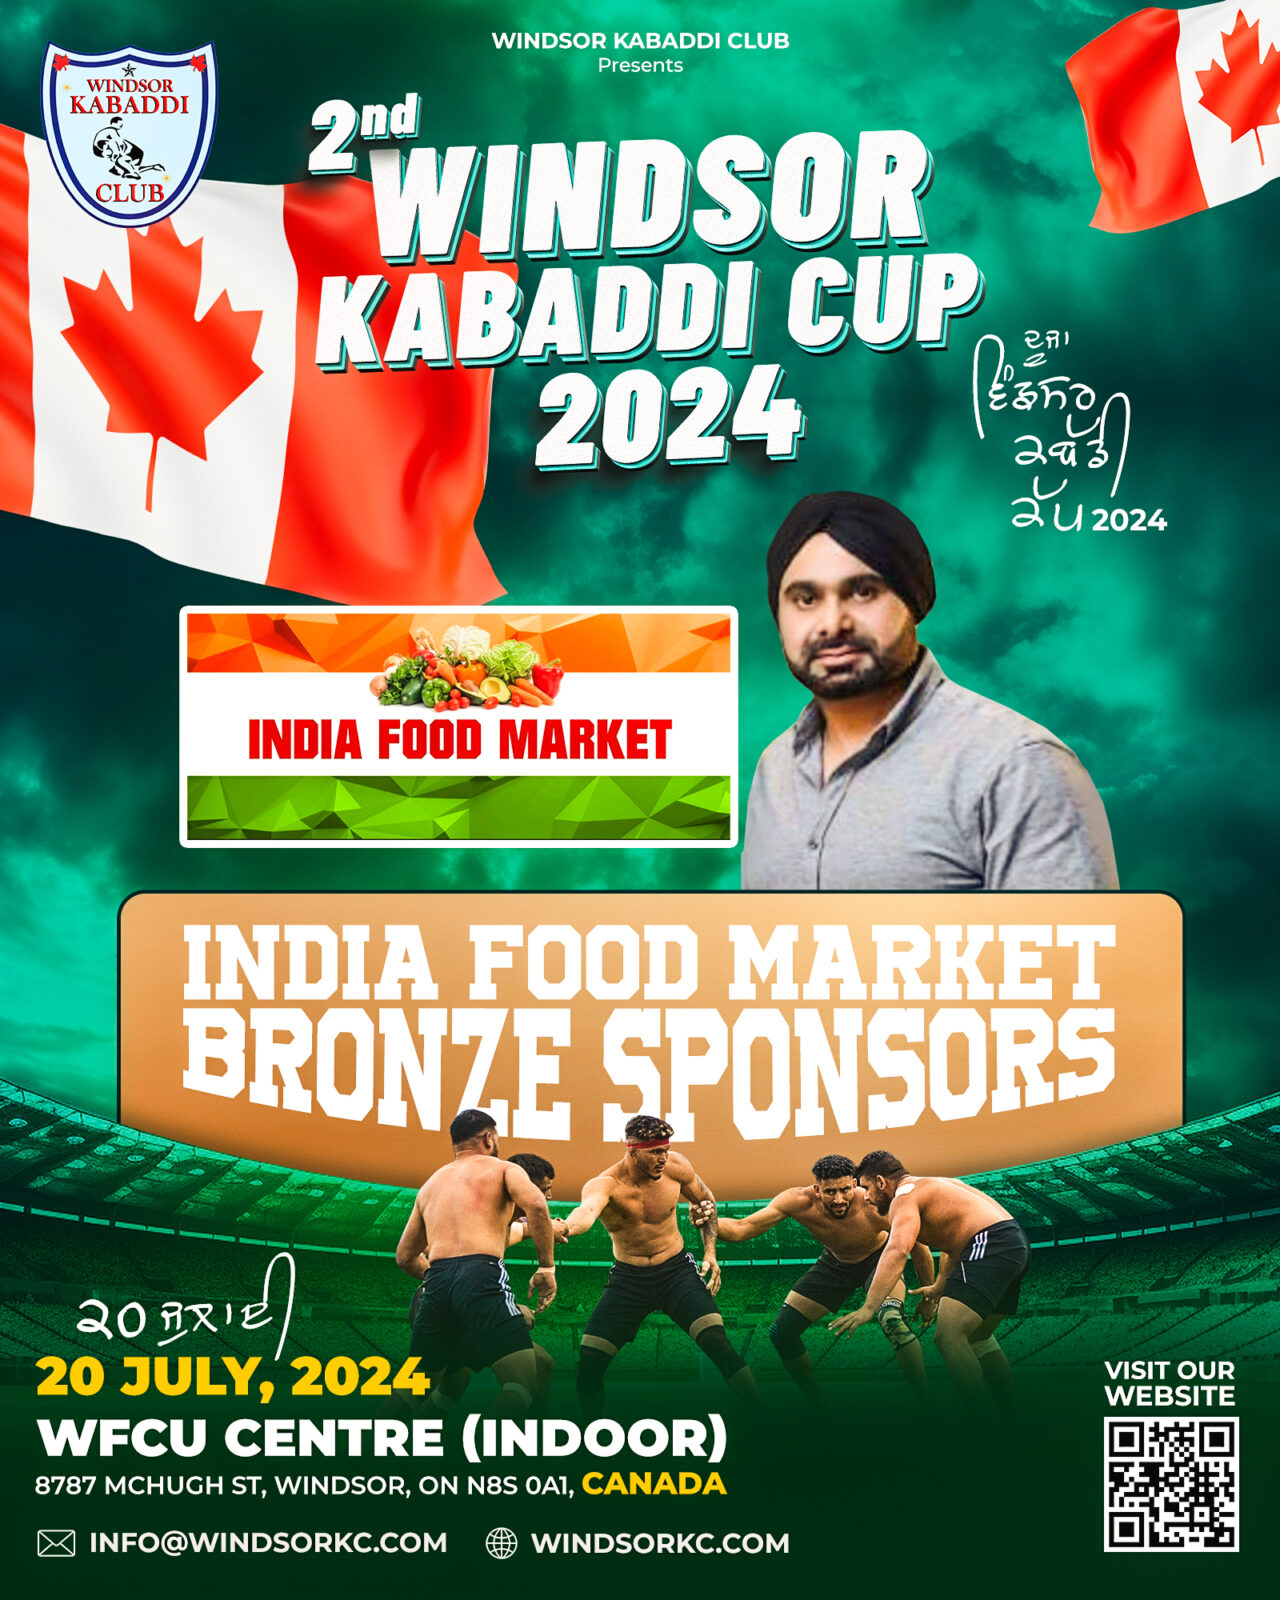 India Food Market Bronze SPONSOR